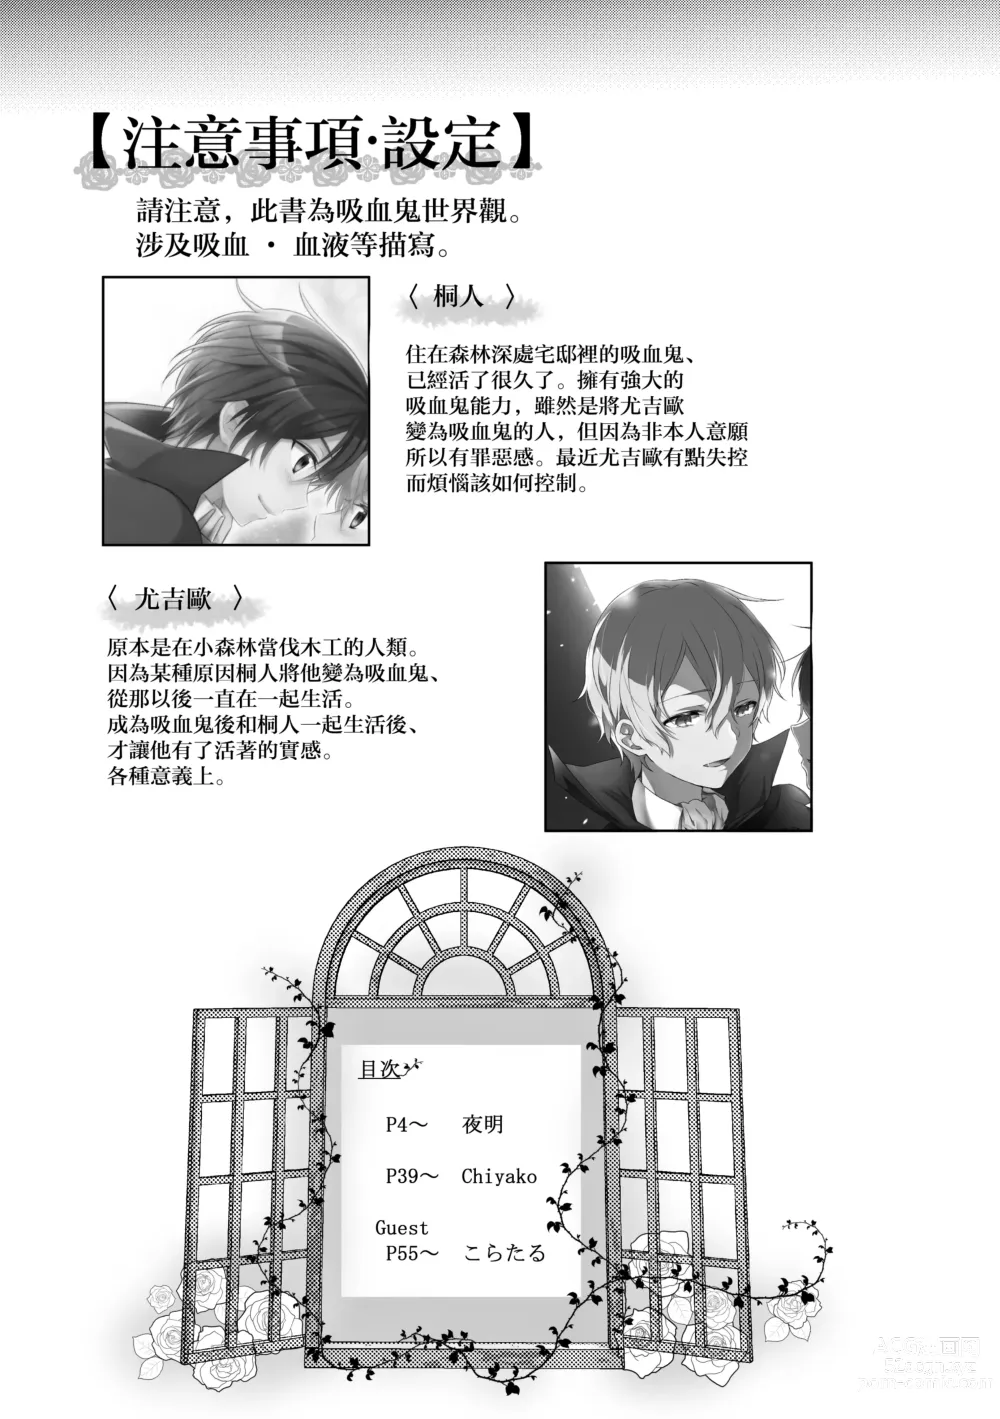 Page 2 of doujinshi Kimi to Boku no Waltz